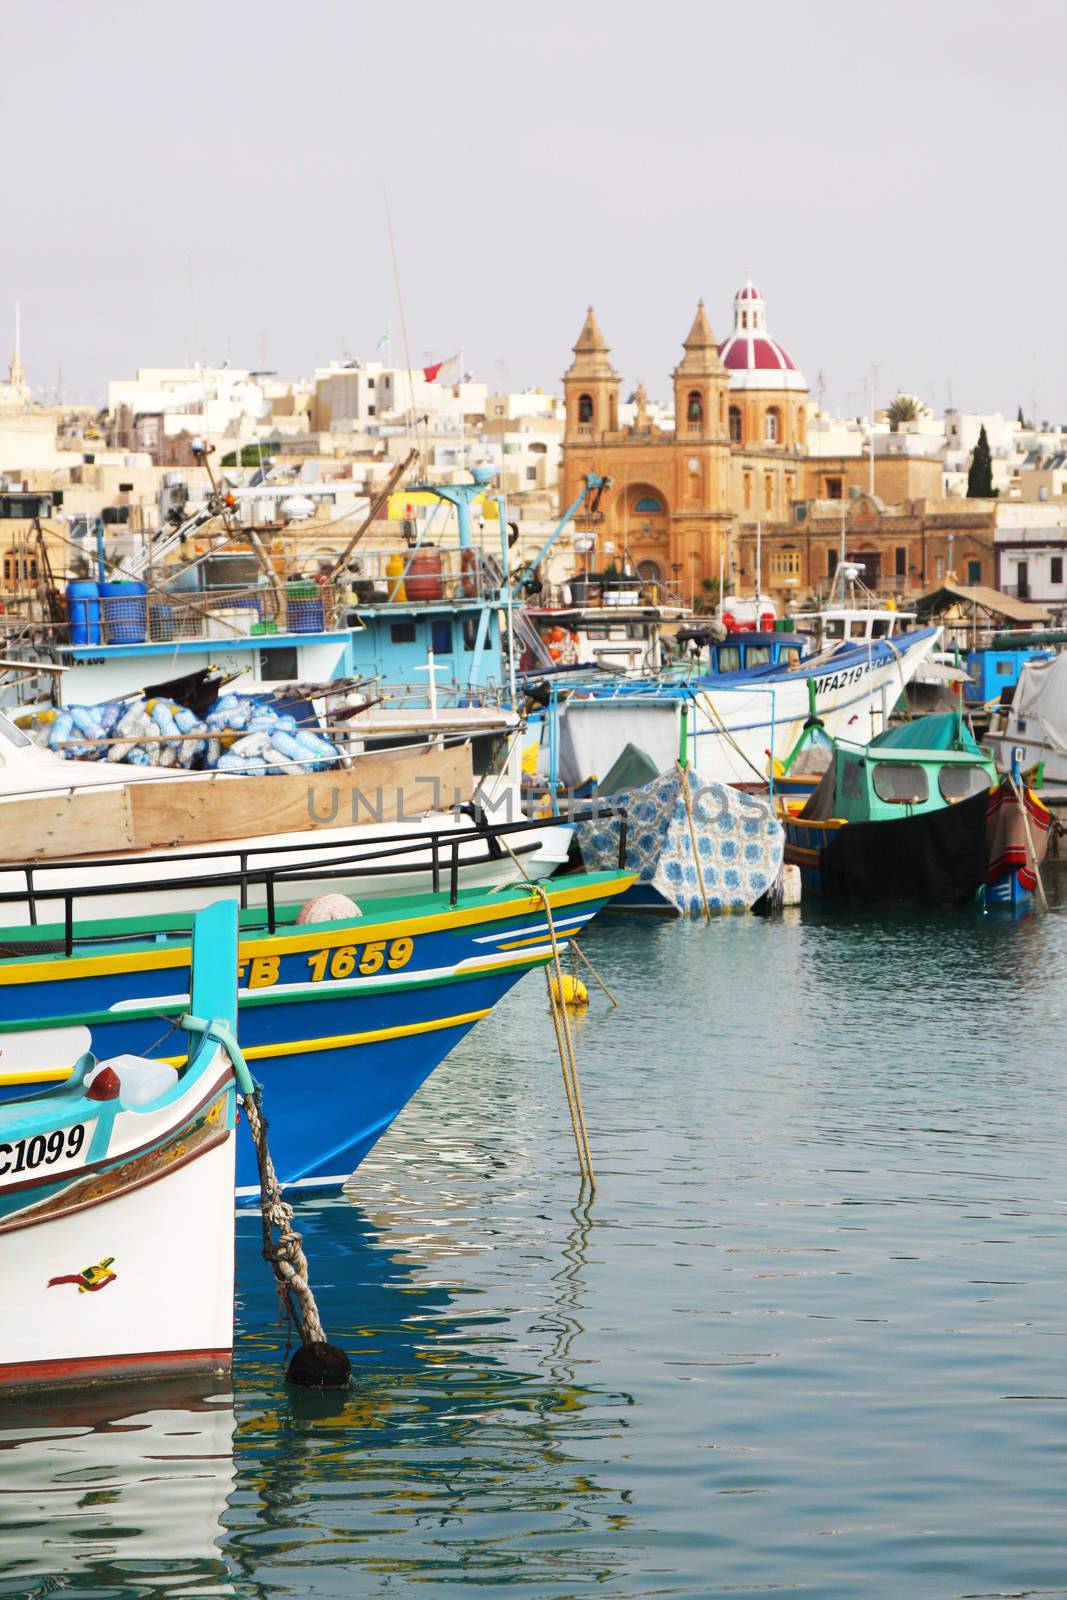 Detail of Marsaxlokk harbour in Malta, Europe, Mediterranean showing fishing boats